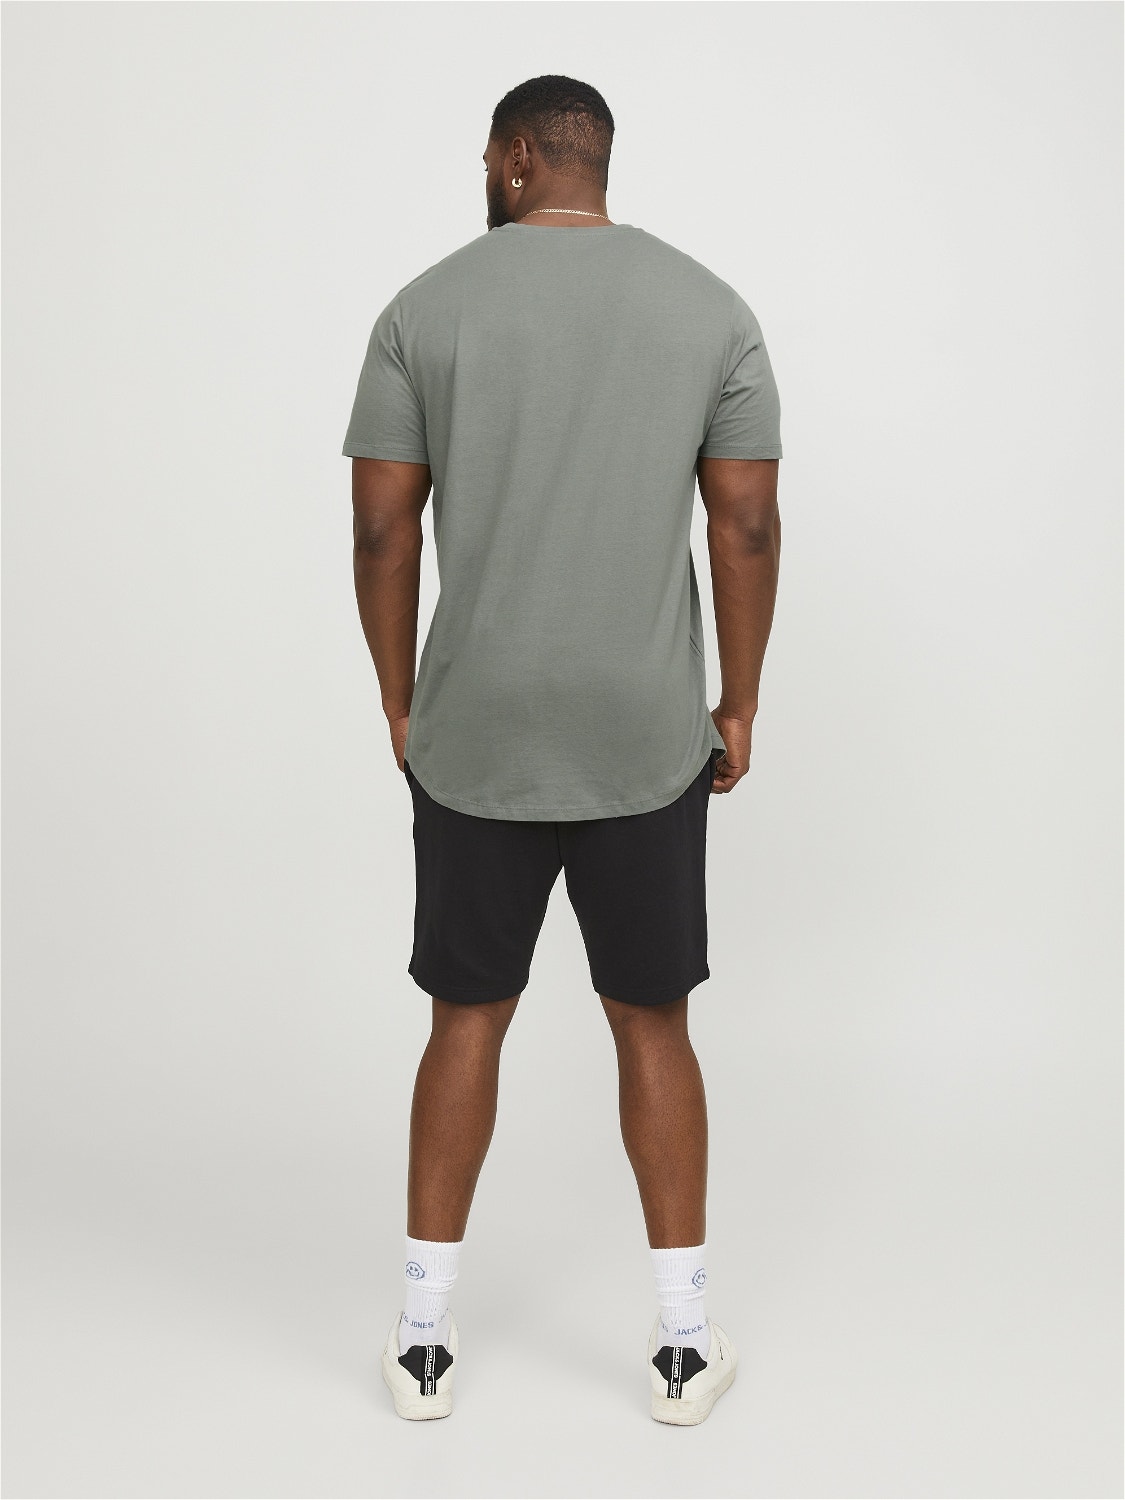 Jack & Jones Plus Size Plain T-shirt -Sedona Sage - 12184933